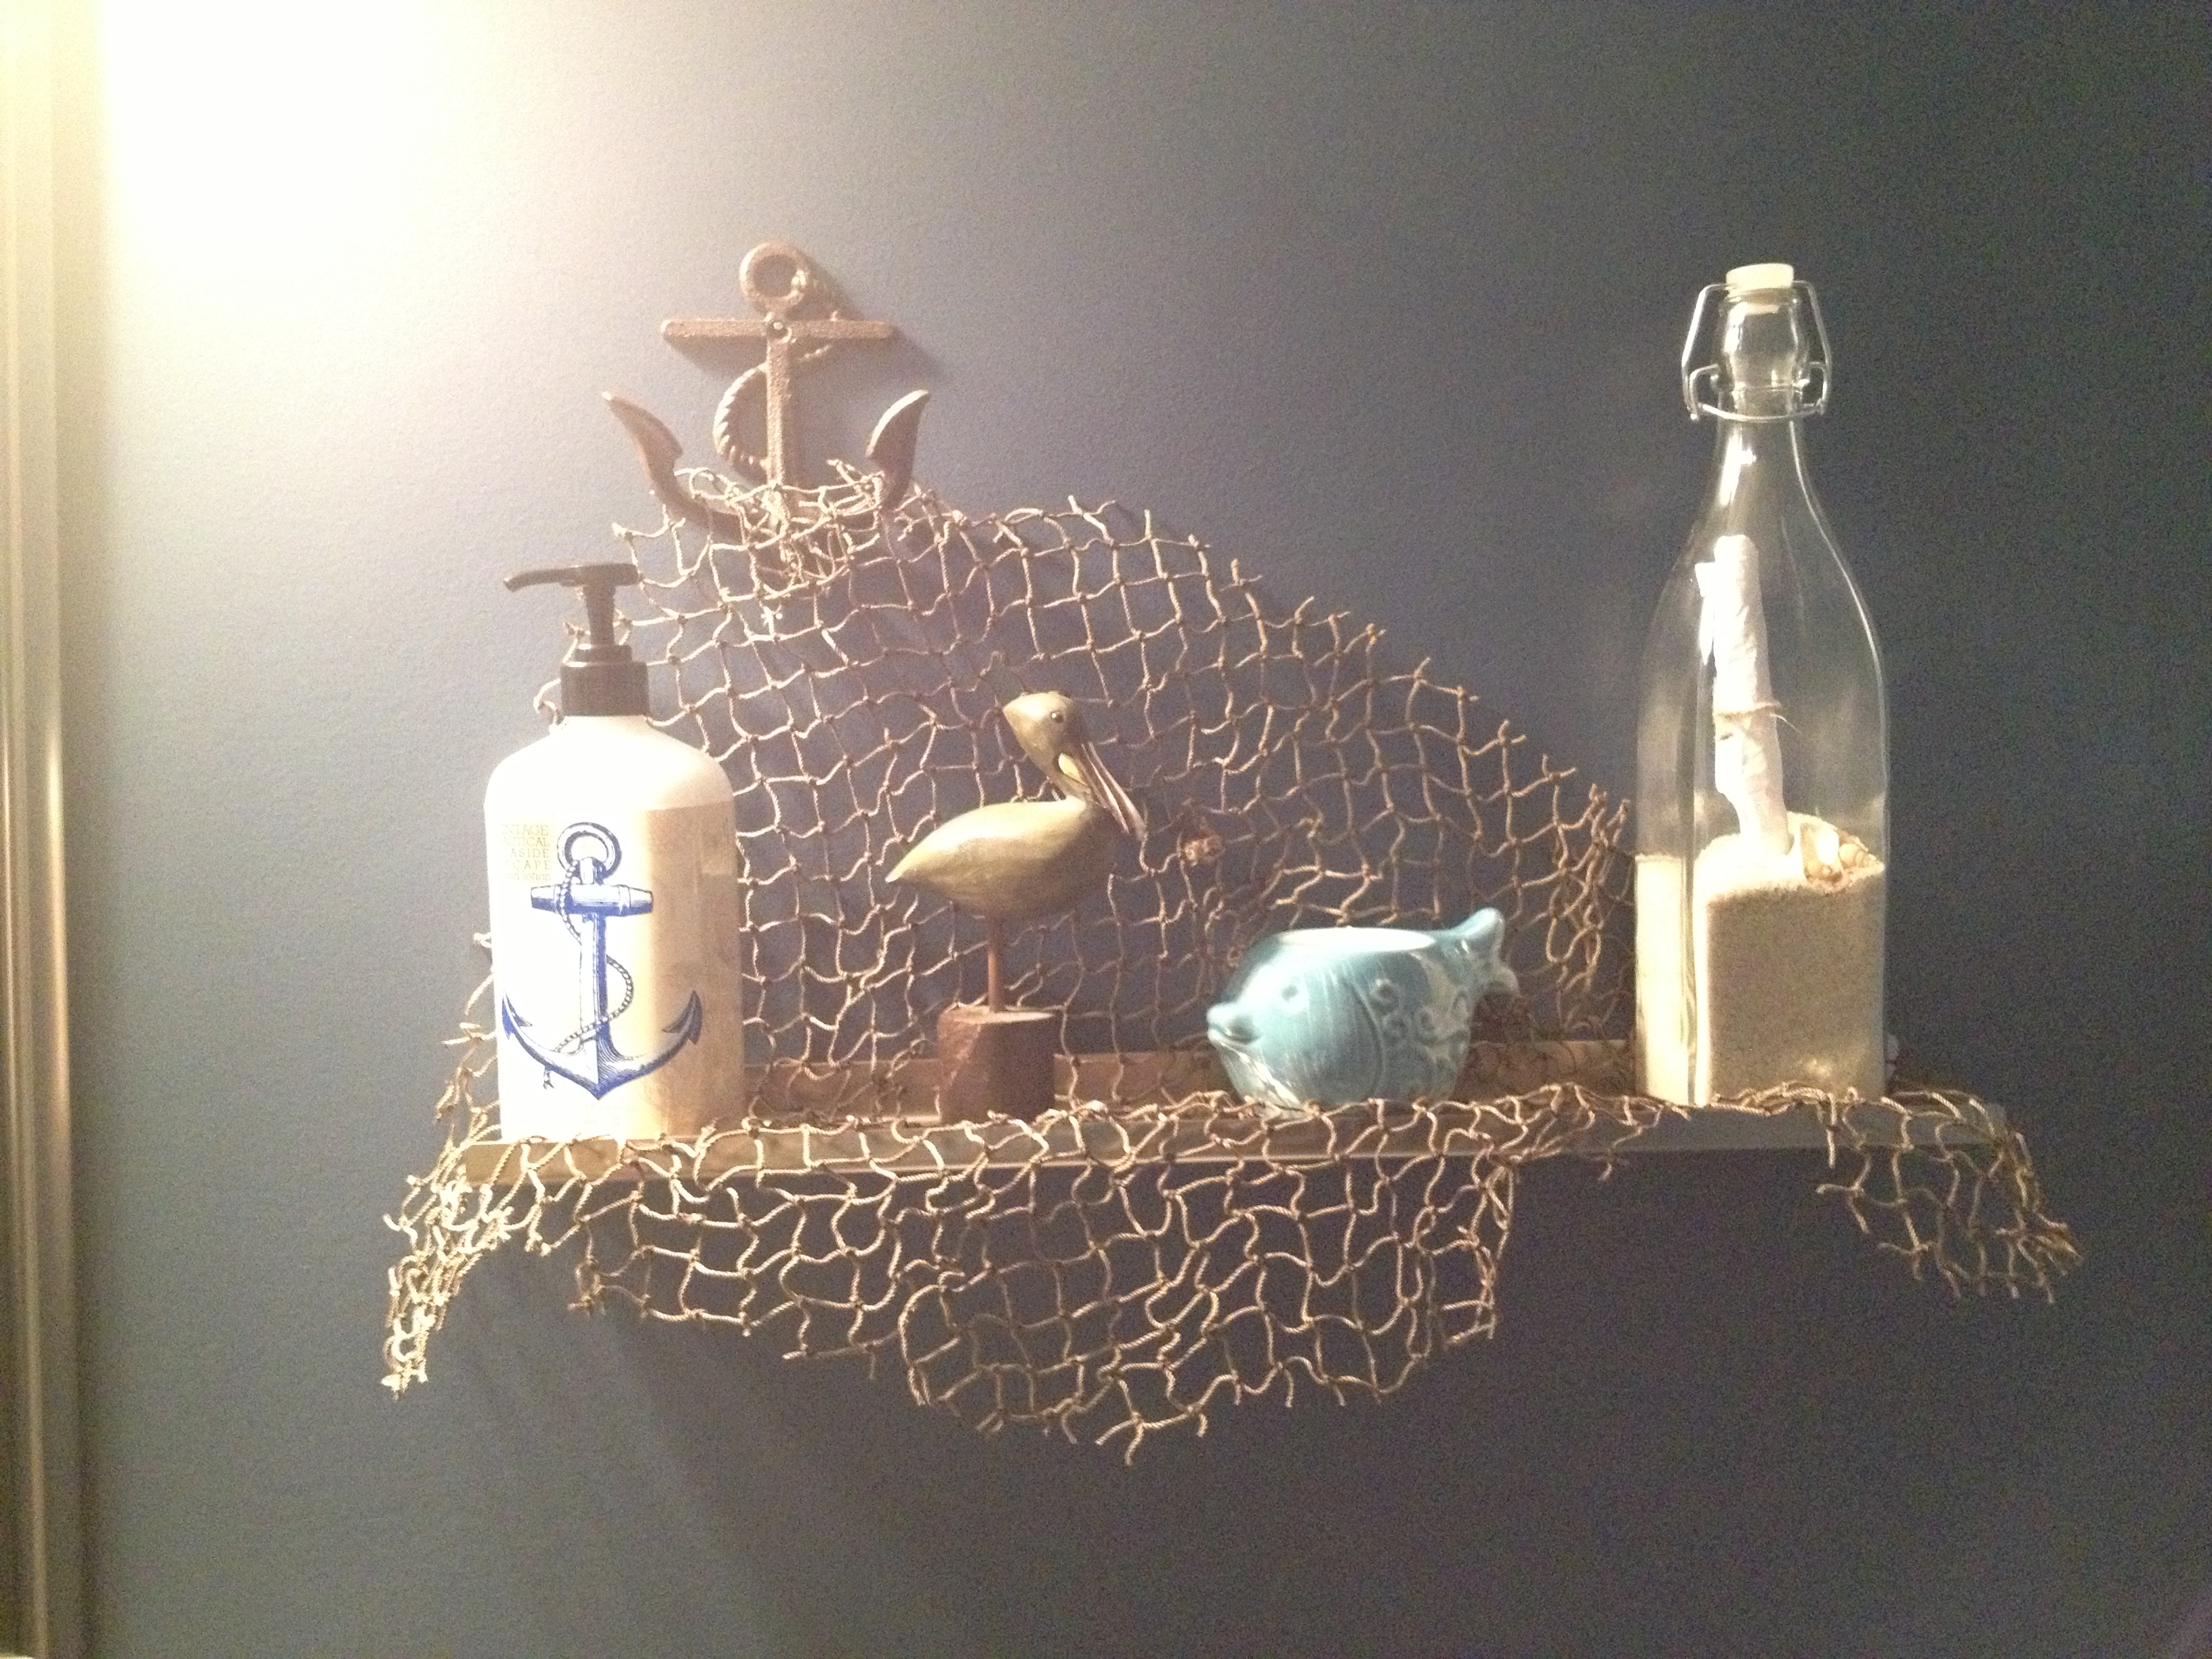 nautical bathroom decor cute shelf decor for a nautical bathroom! make sure you put a real LESWWSX